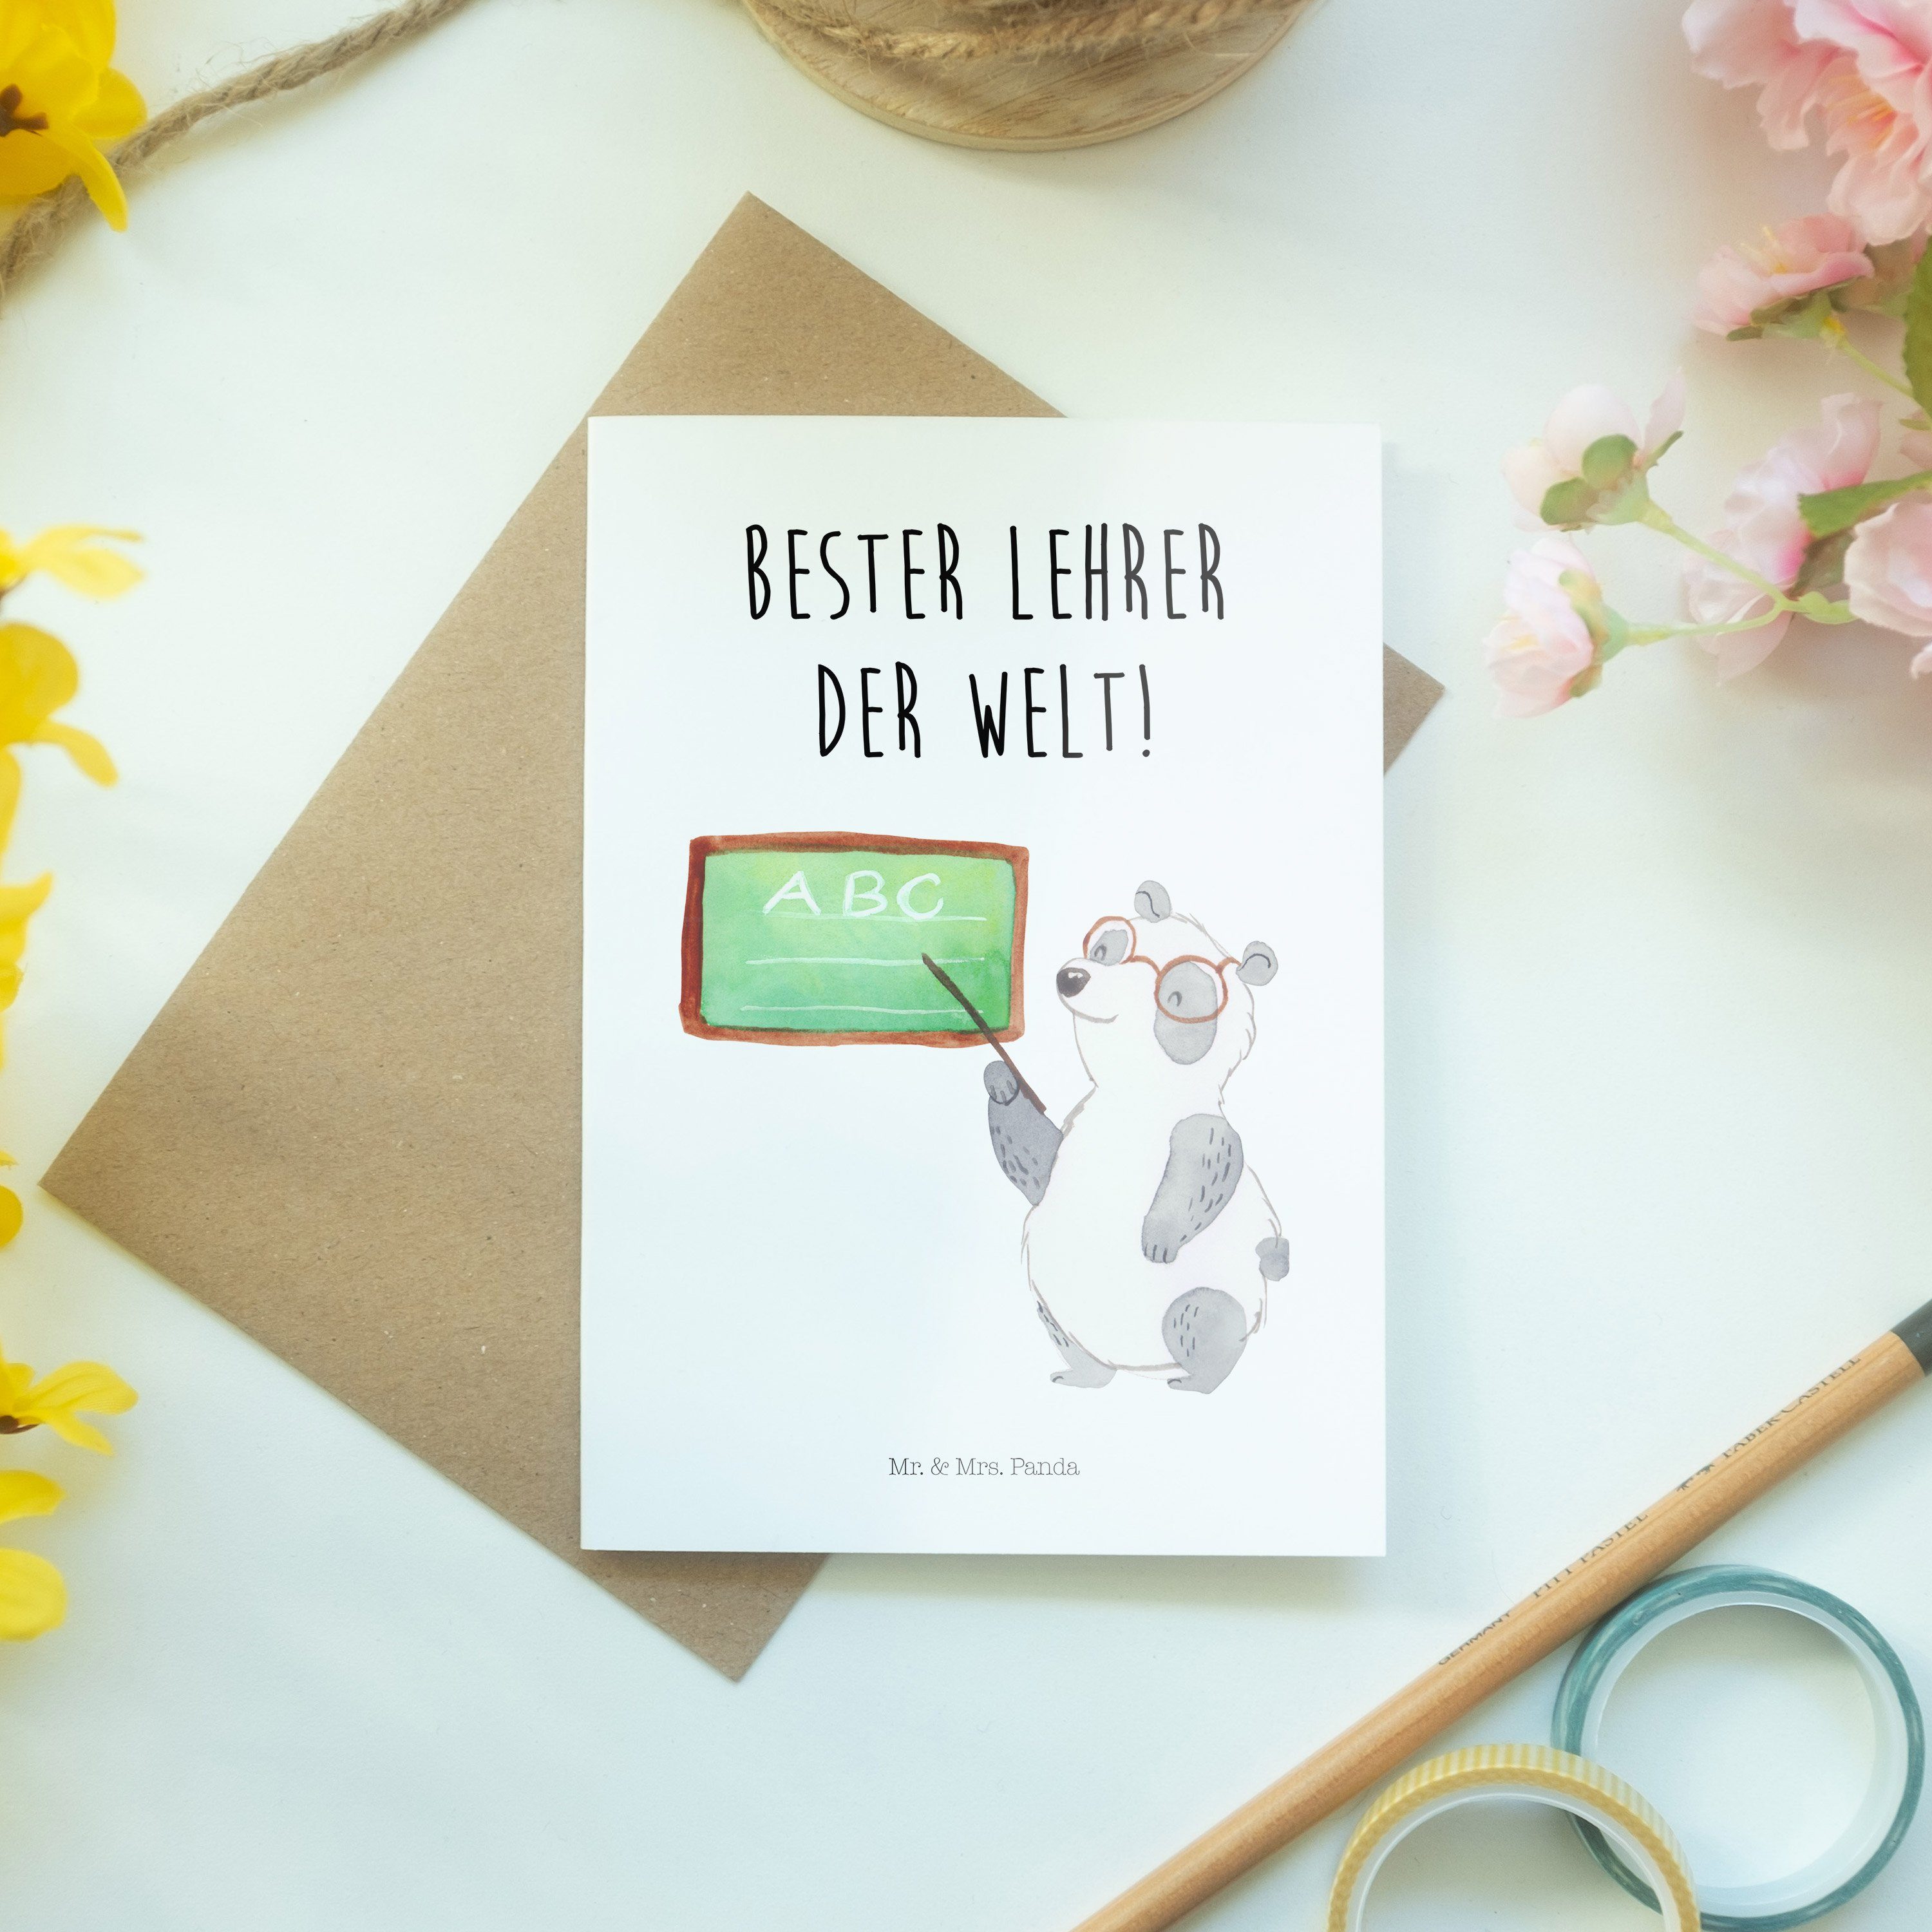 Mr. & - Klappkarte, Weiß Panda - Grußkarte Hochzeitskarte, Tiermotiv Mrs. Panda Lehrer Geschenk